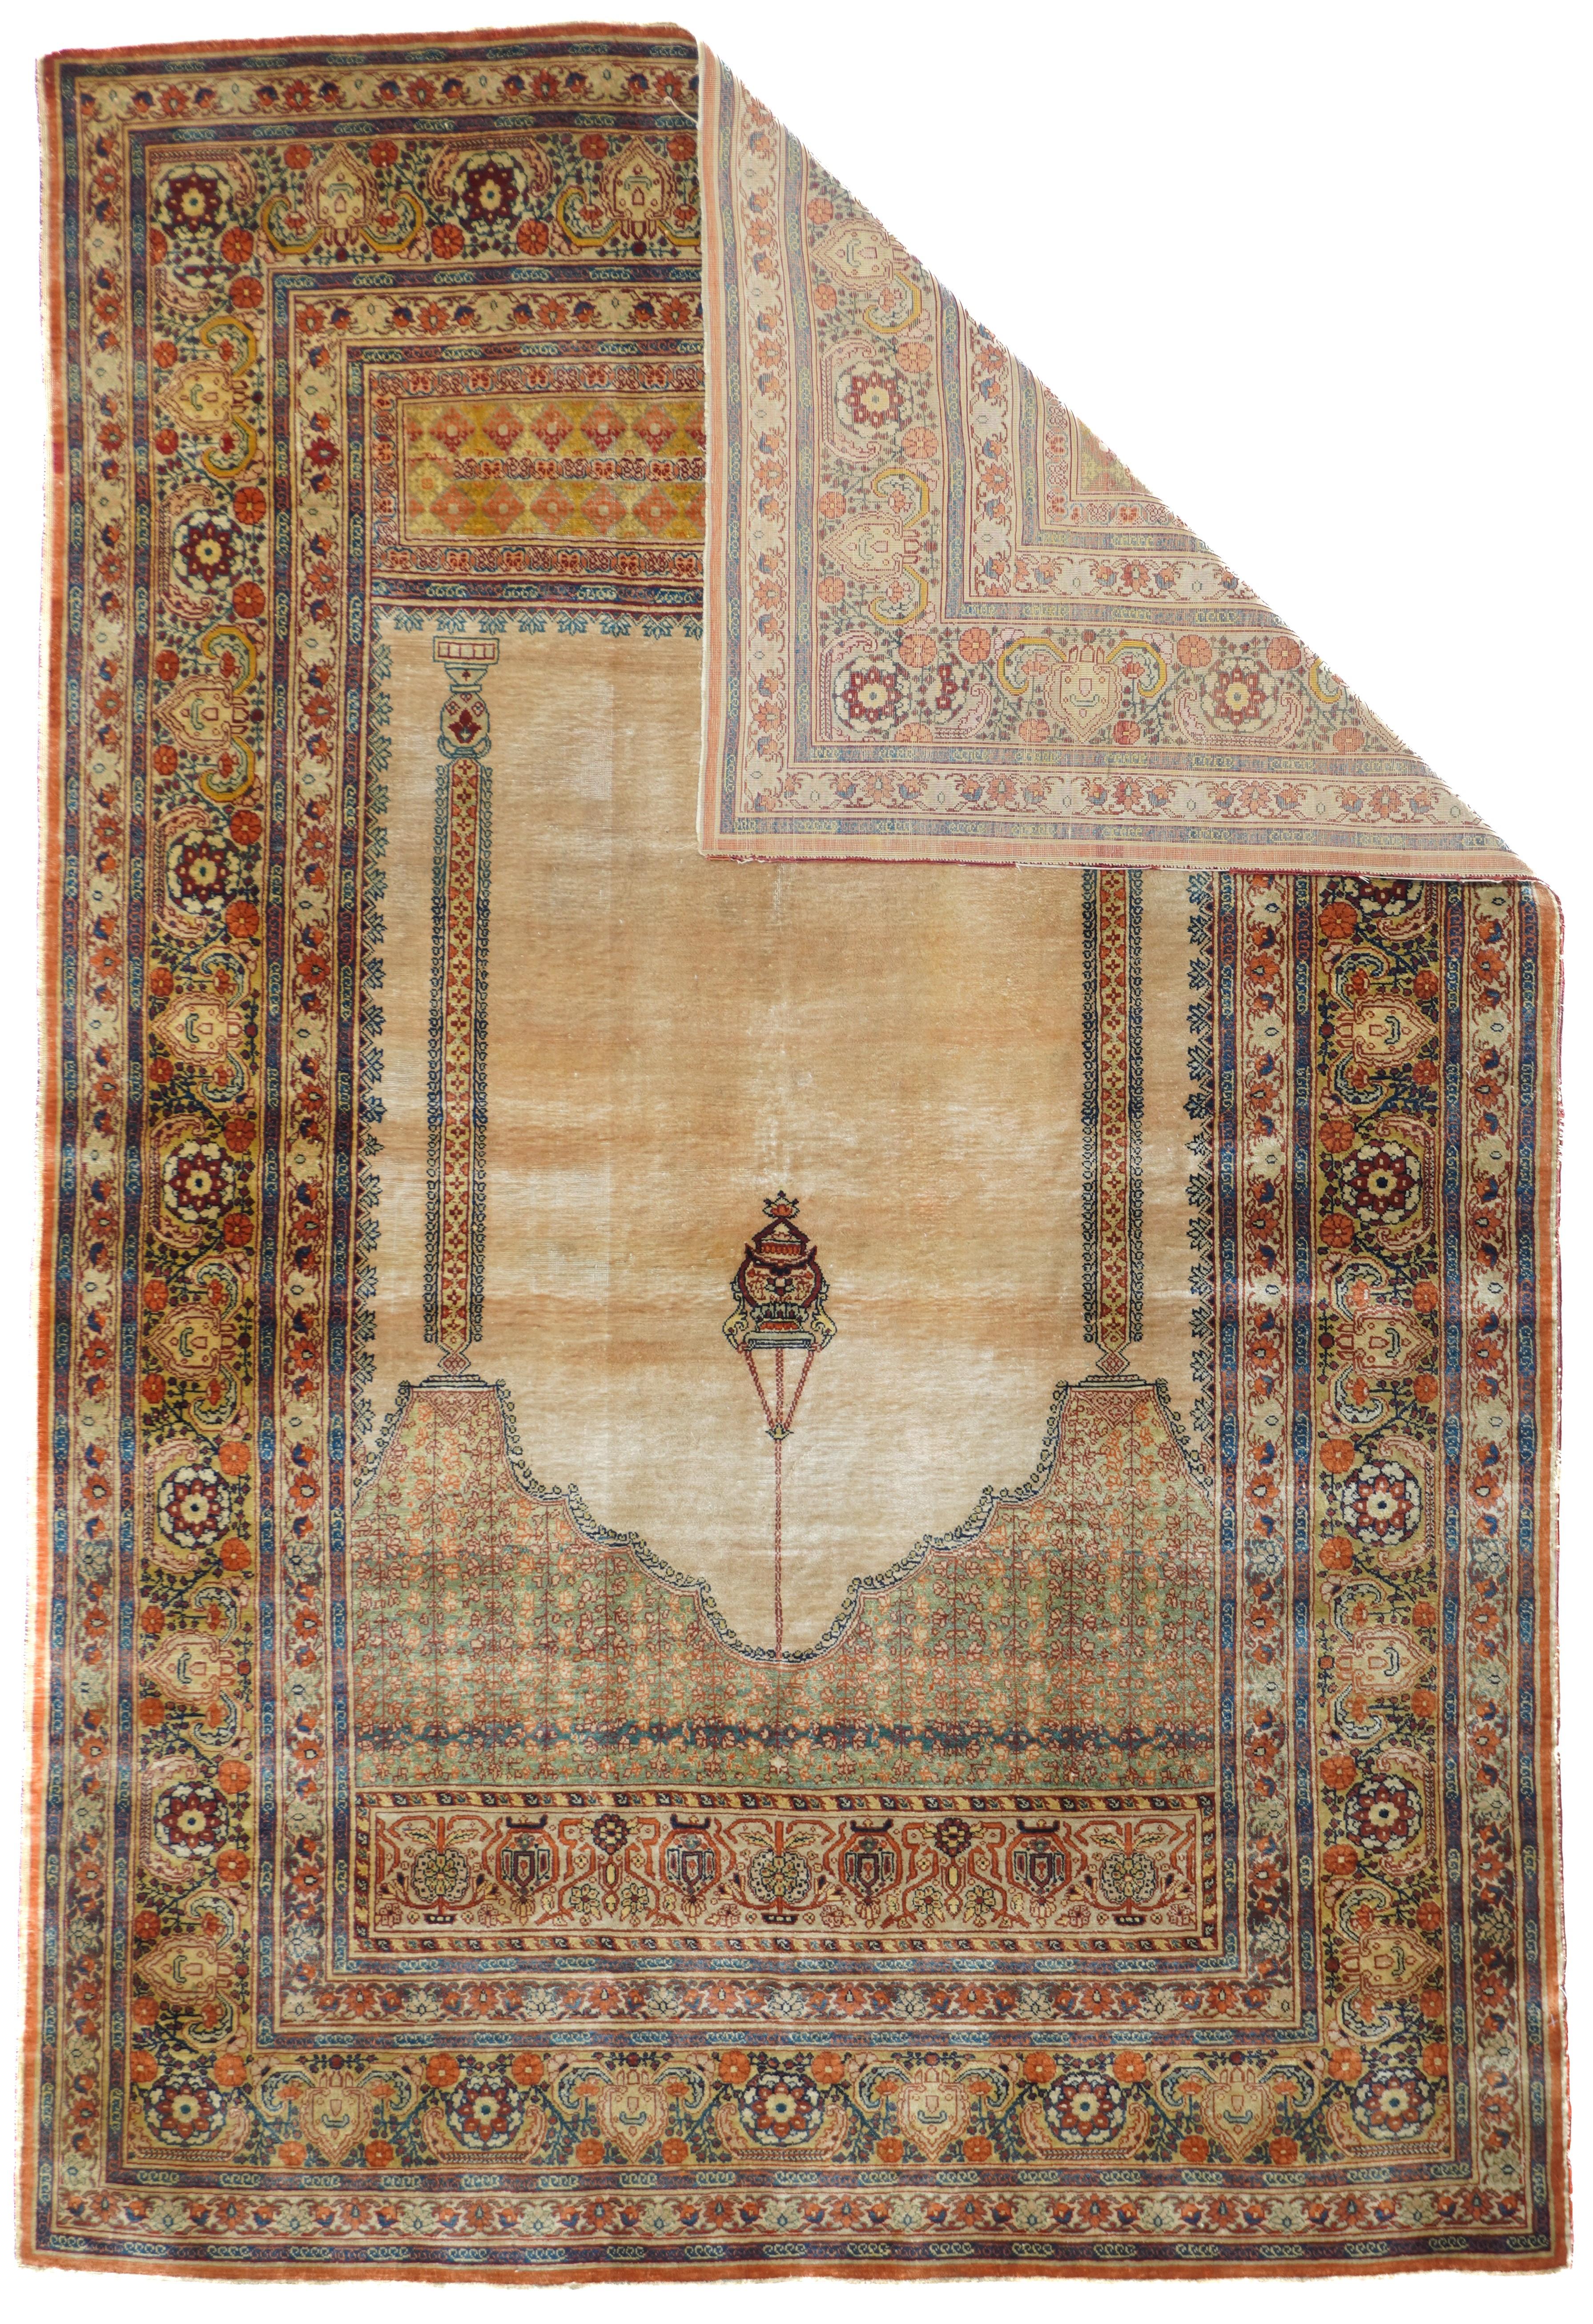 Antiker Seiden-Tabriz-Teppich 3'9'' x 5'8''. Eine fein gewebte Stadtseide im türkischen Stil mit einem ecrufarbenen Feld, an dessen Spitze eine Moscheelampe hängt, flankiert von zwei Ziersäulen, die eine tiefe Zwickelplatte tragen. Darüber und